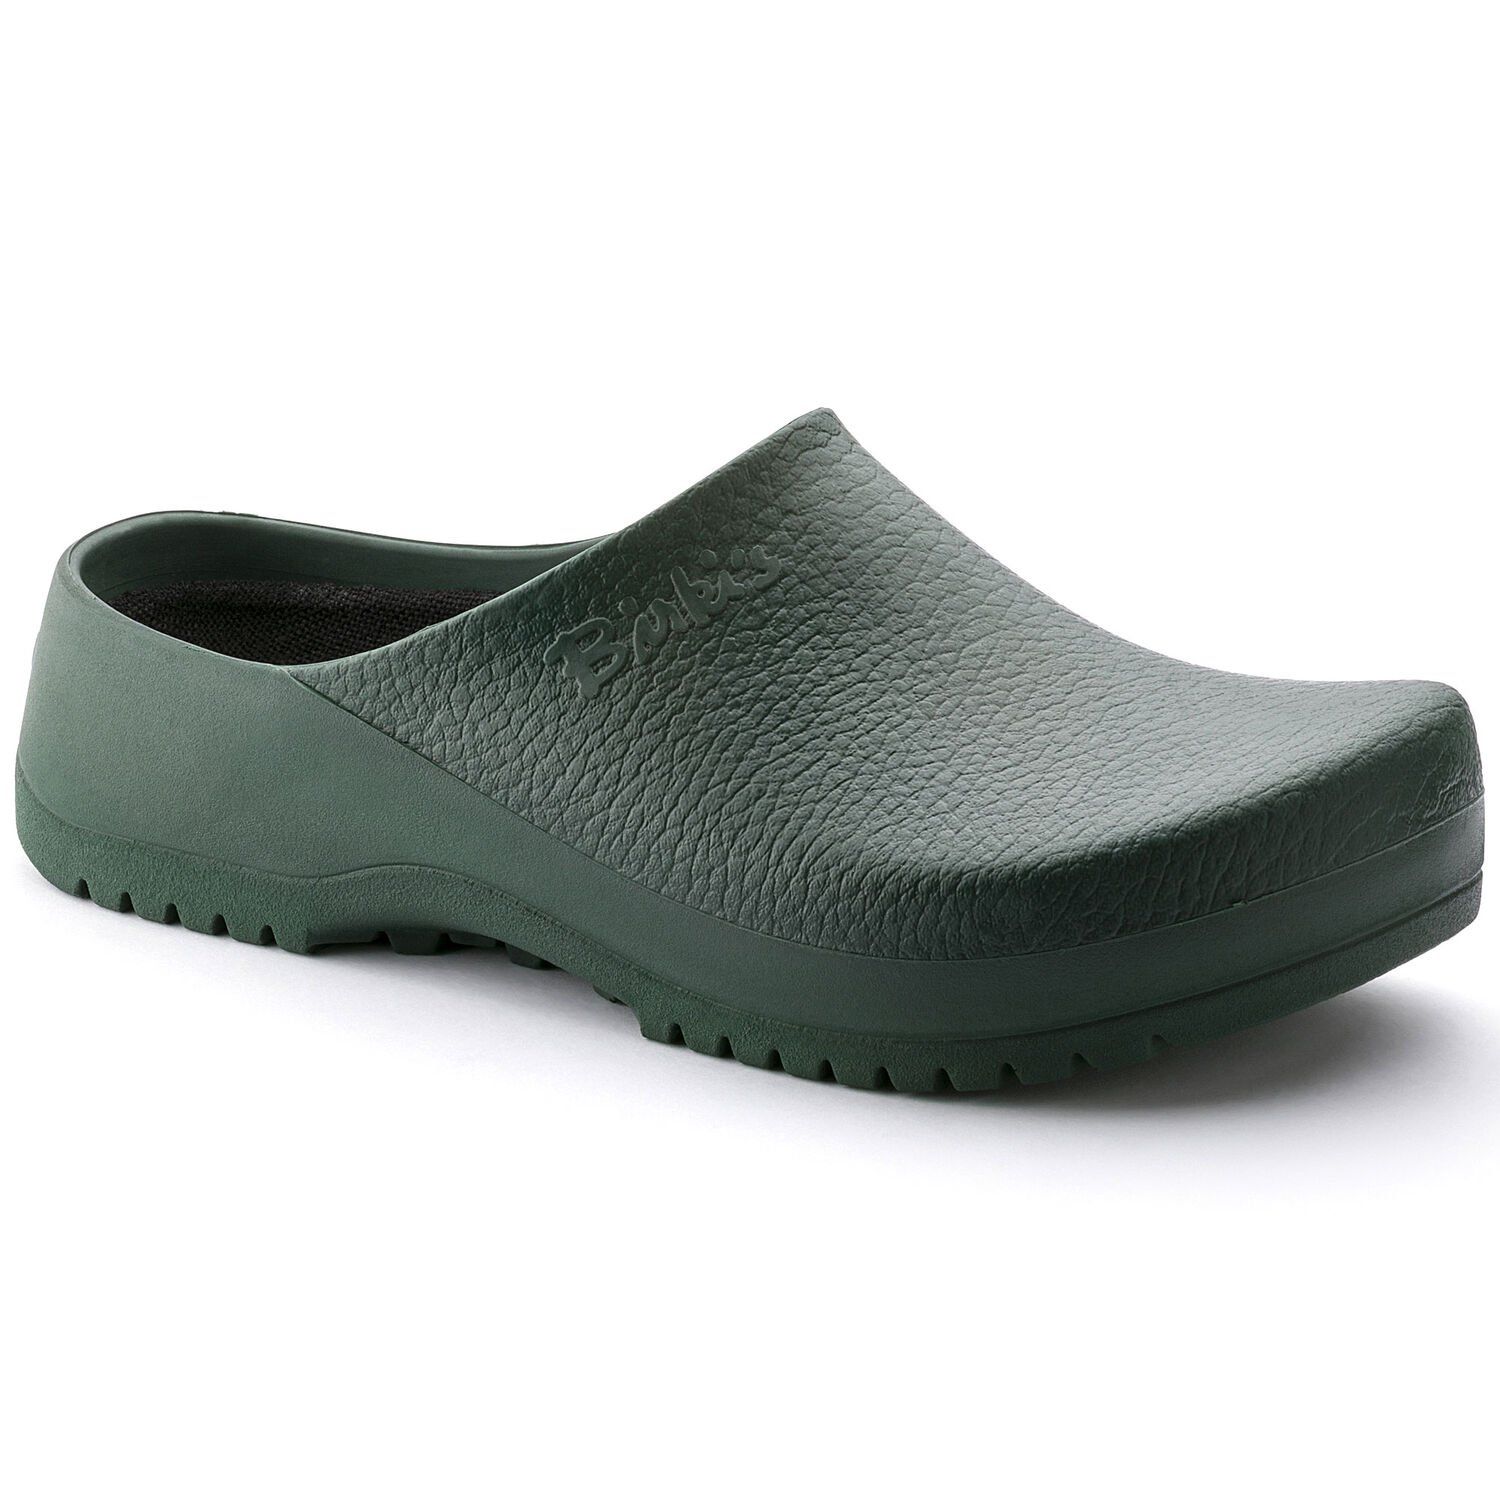 clogs garden shoes